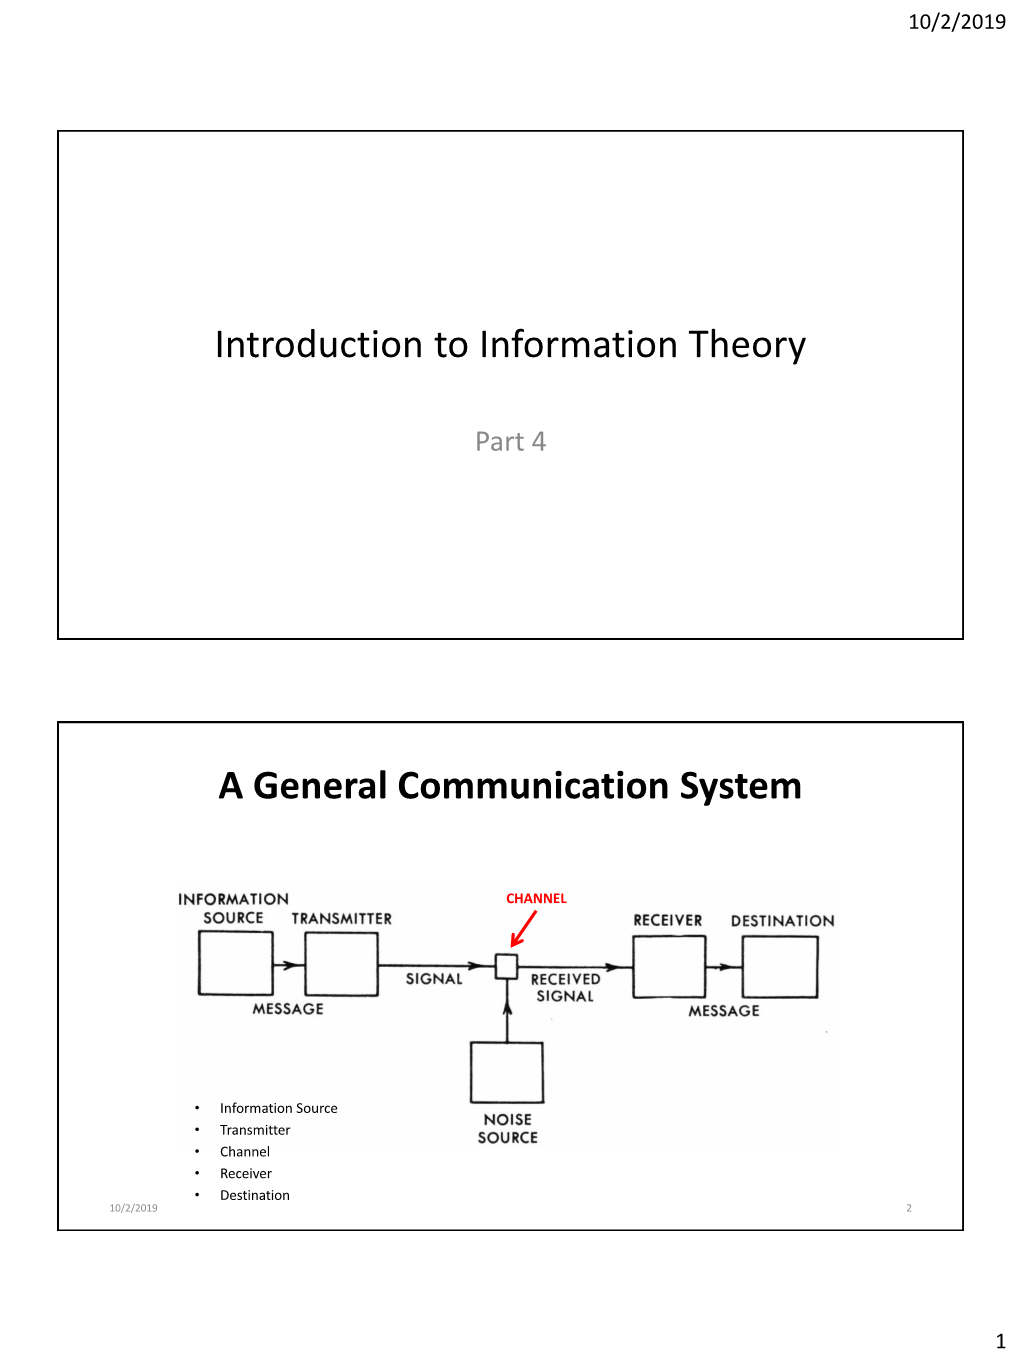 Mathematical Theory of Communication)